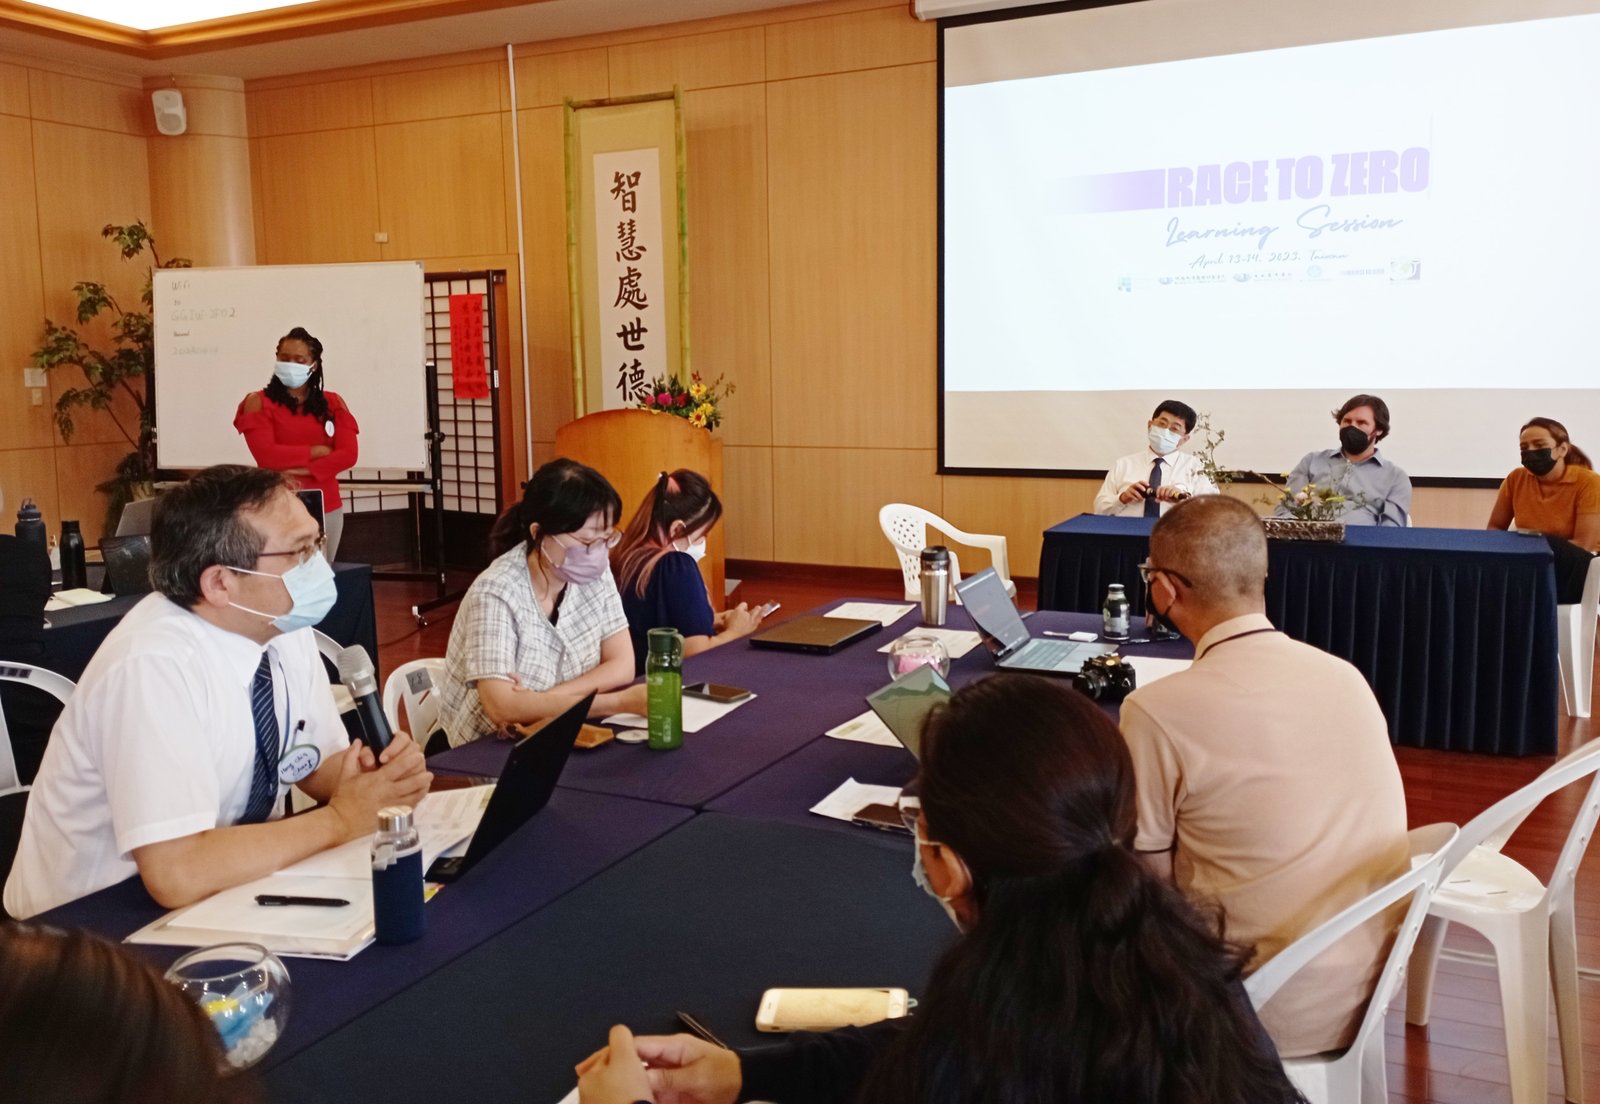 臺灣首次舉辦聯合國「Race To Zero」高峰會，針對推動醫院淨零碳排之資源盤點、擬定行動計畫以及針對醫院如何推動相關計畫進行交流學習。